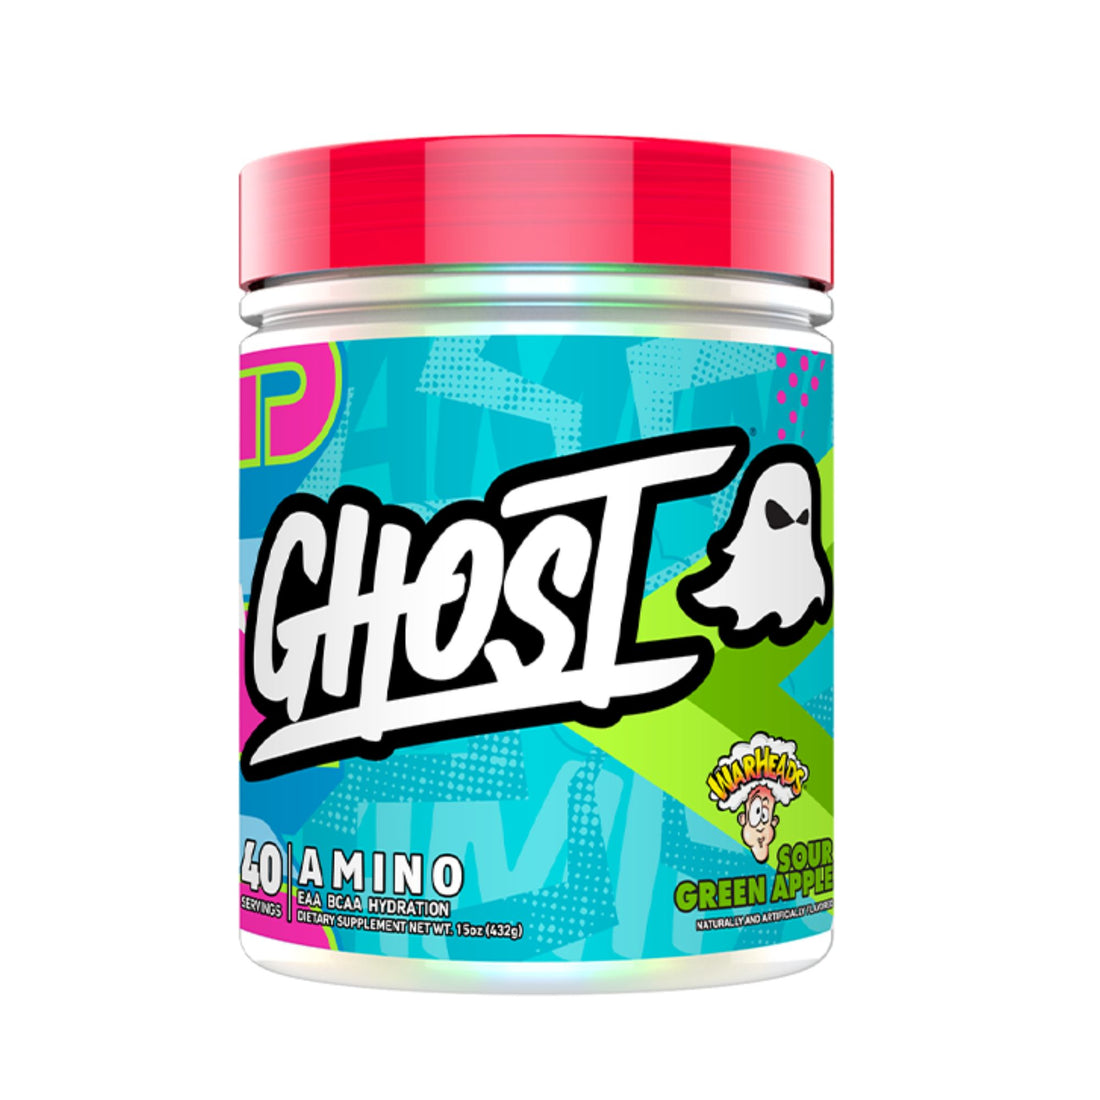 Ghost Amino Amino Acid